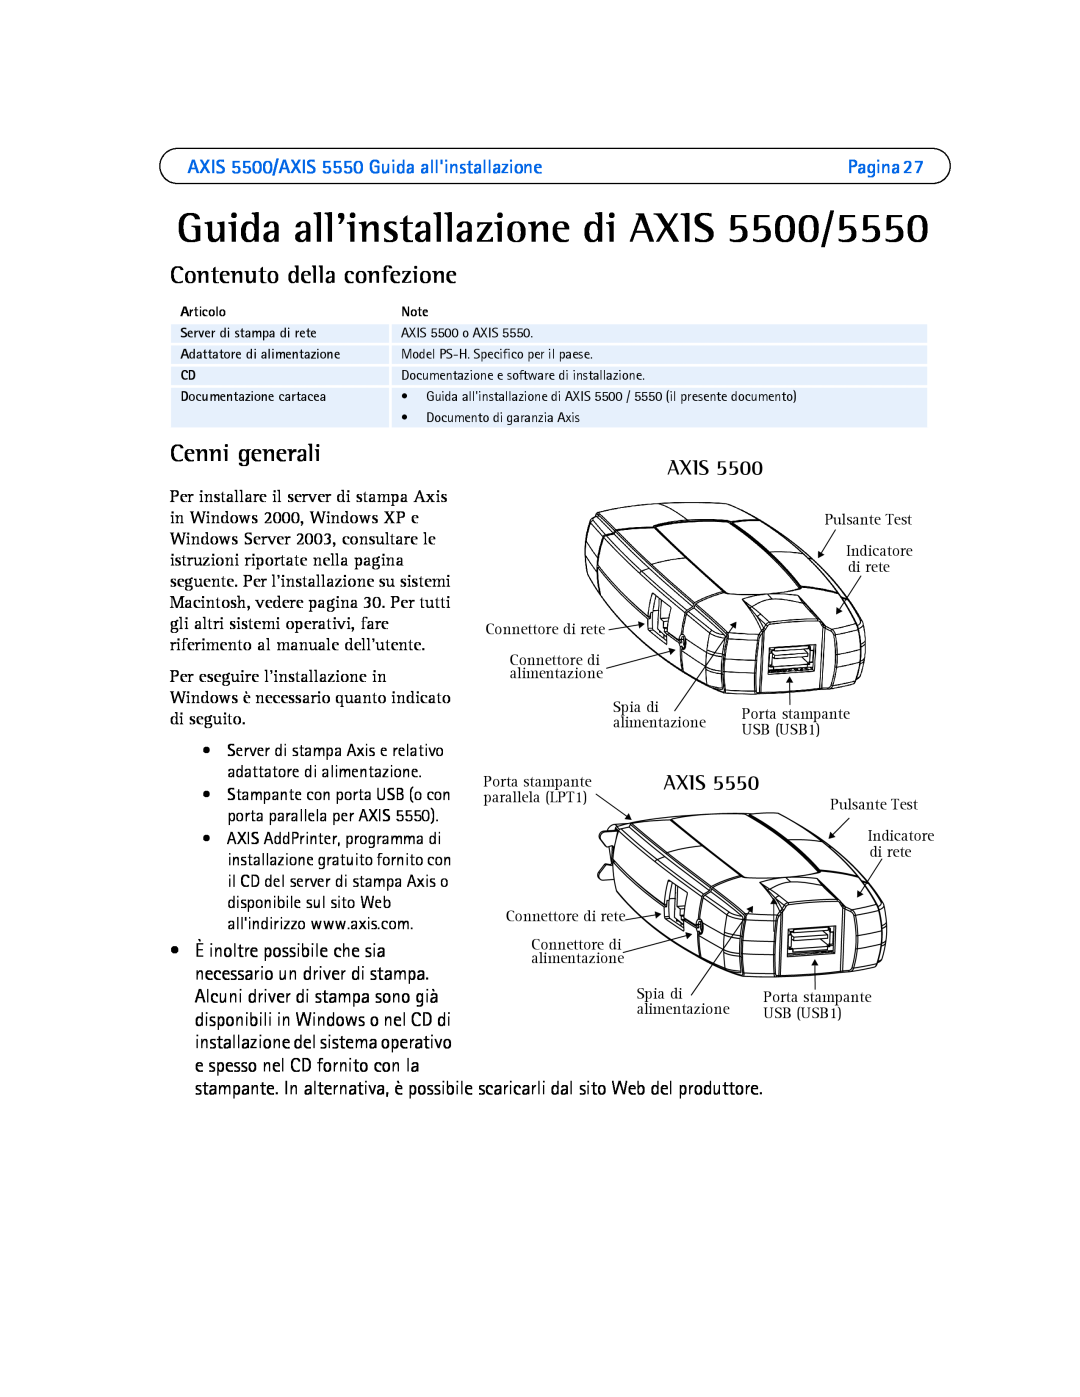 Axis Communications AXIS 5550 Guida allinstallazione di AXIS 5500/5550, Contenuto della confezione, Cenni generali, Axis 